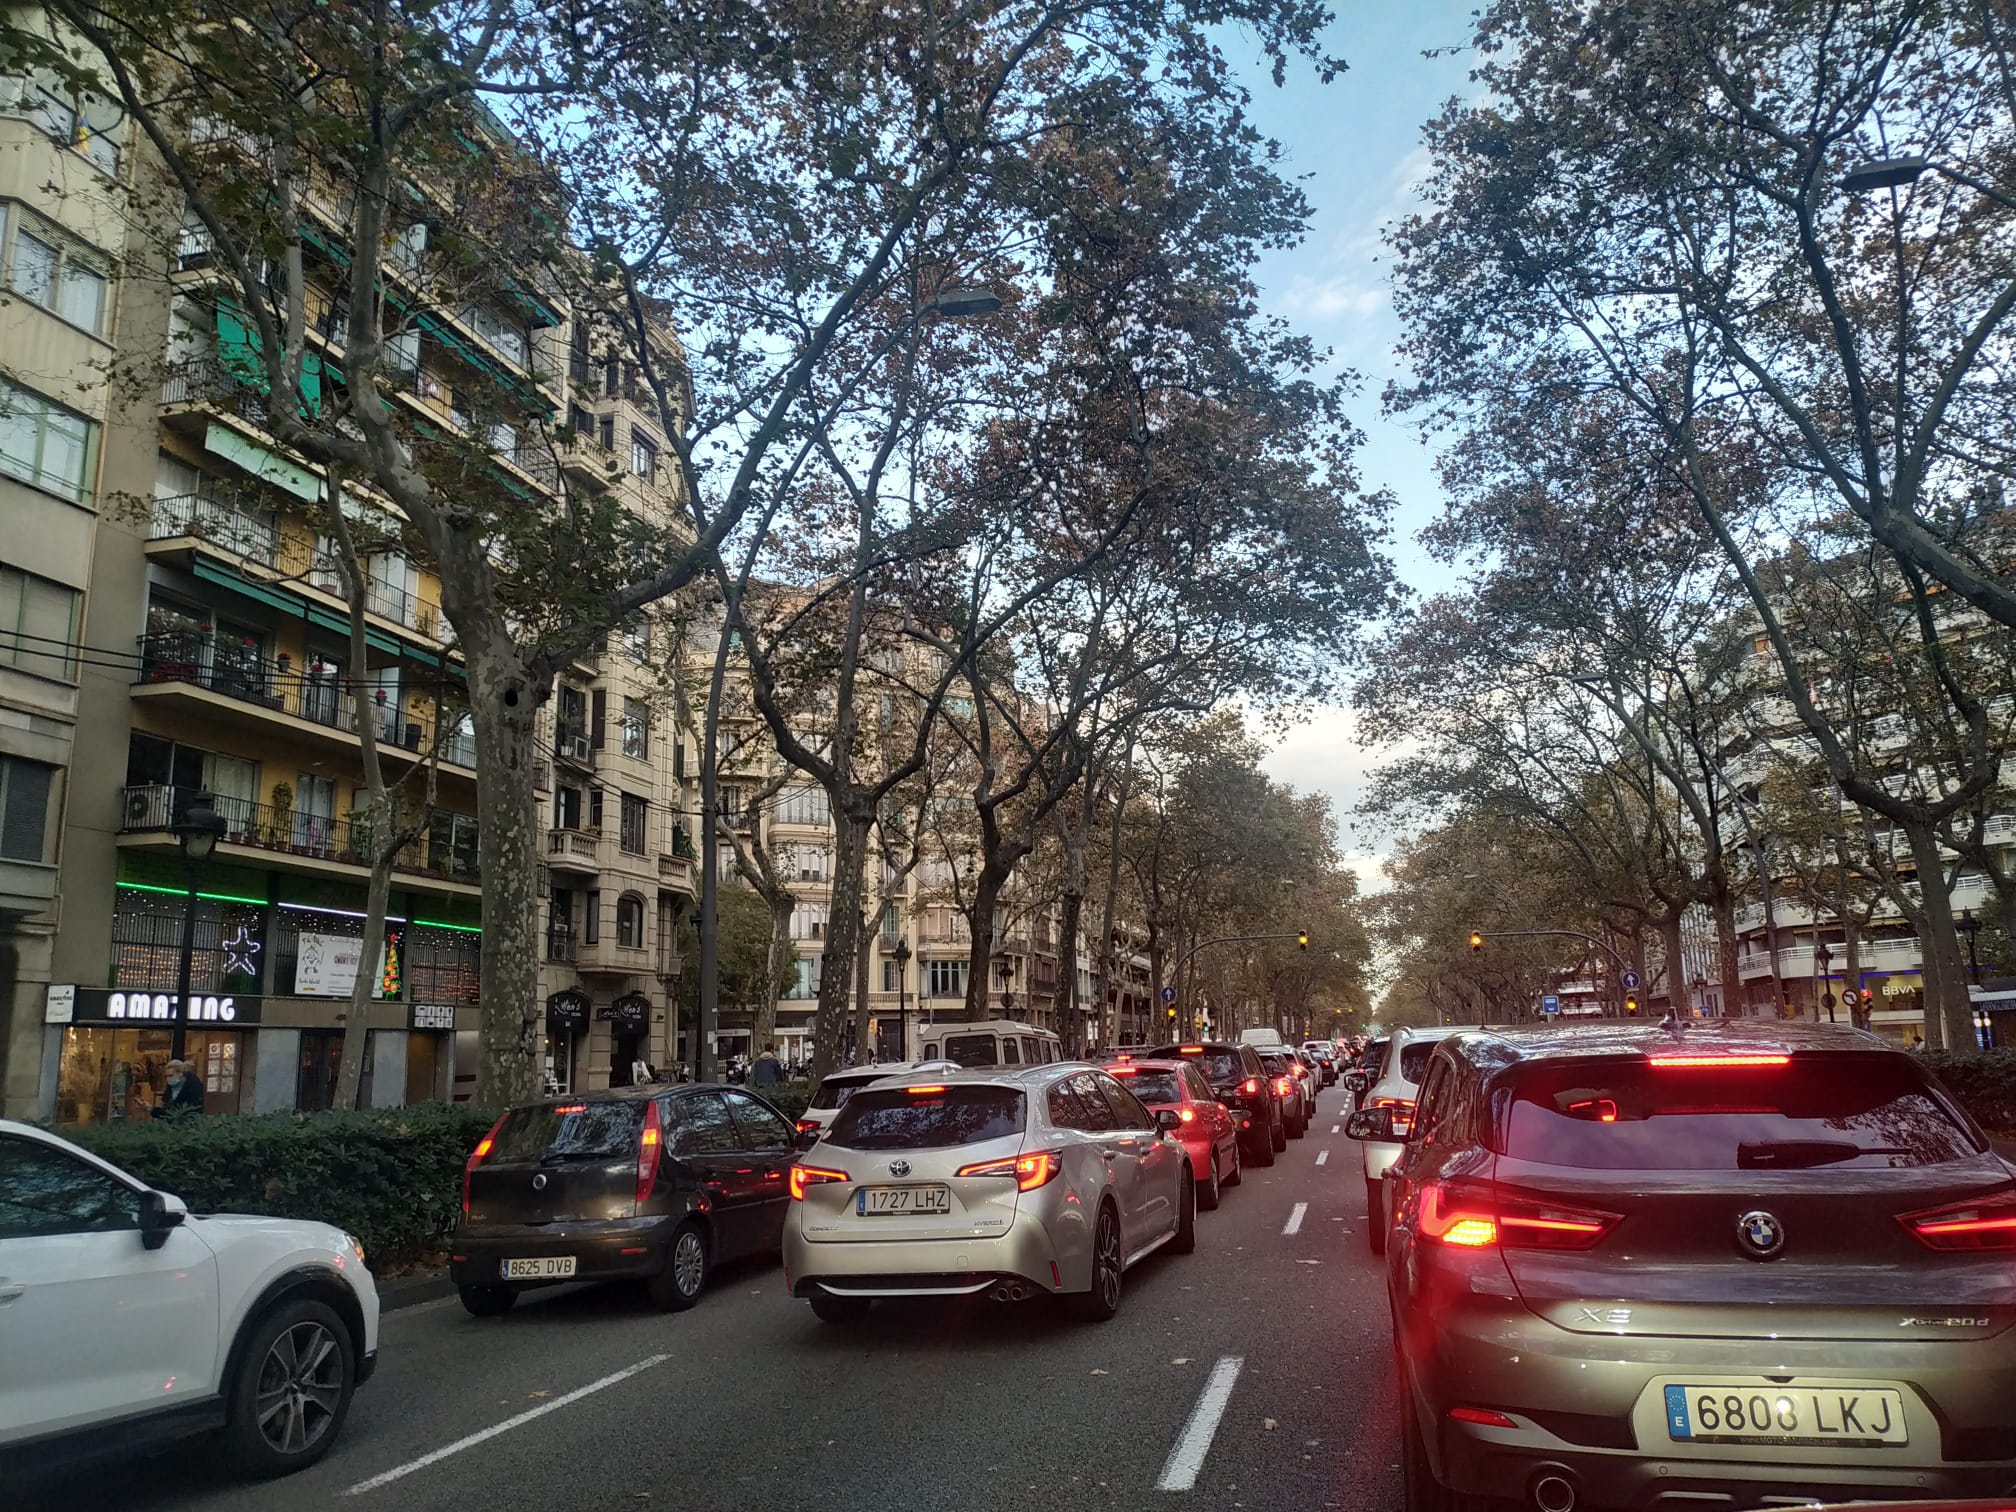 Colapso viario en el centro de Barcelona